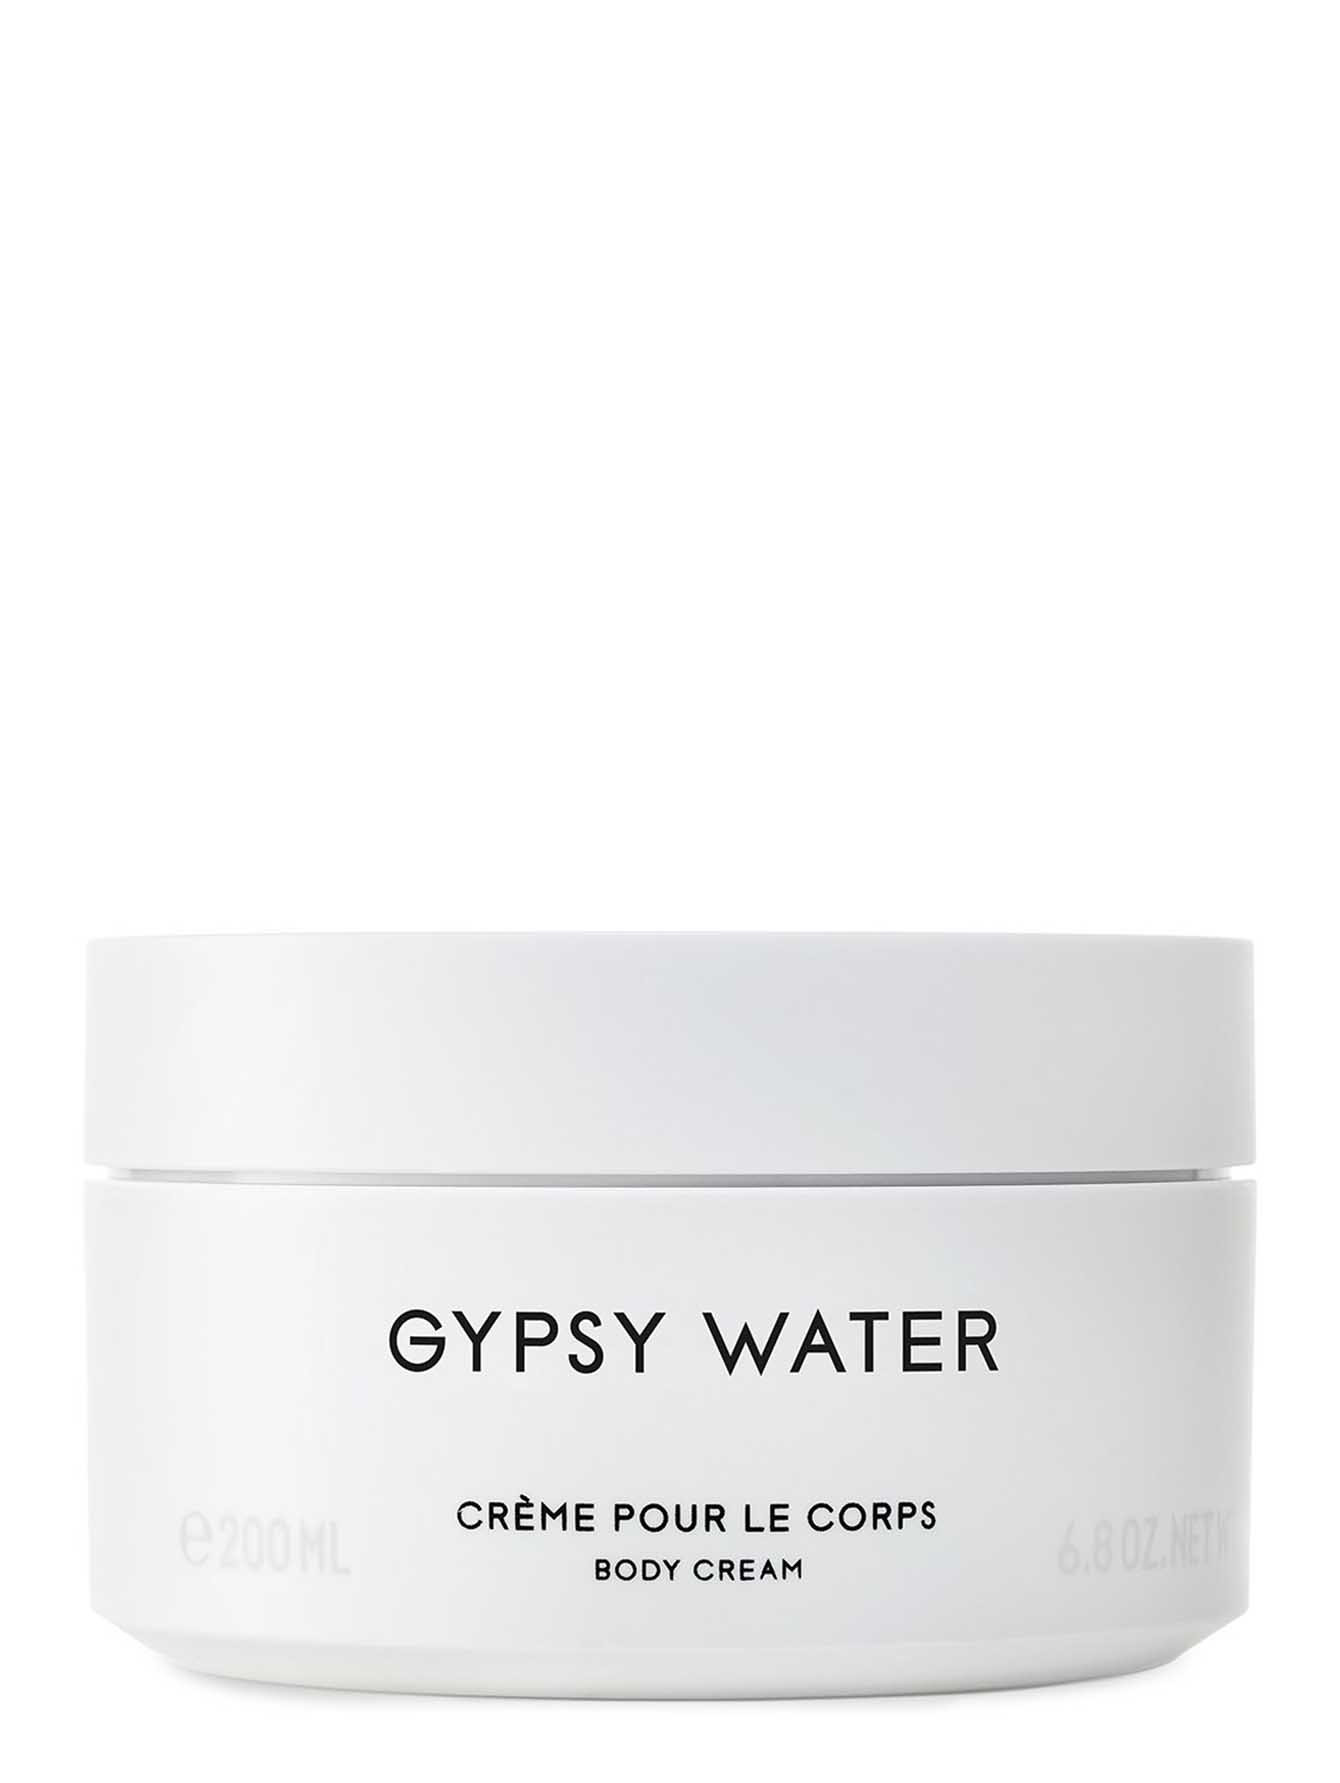 Крем для тела Gypsy Water, 200 мл - Общий вид